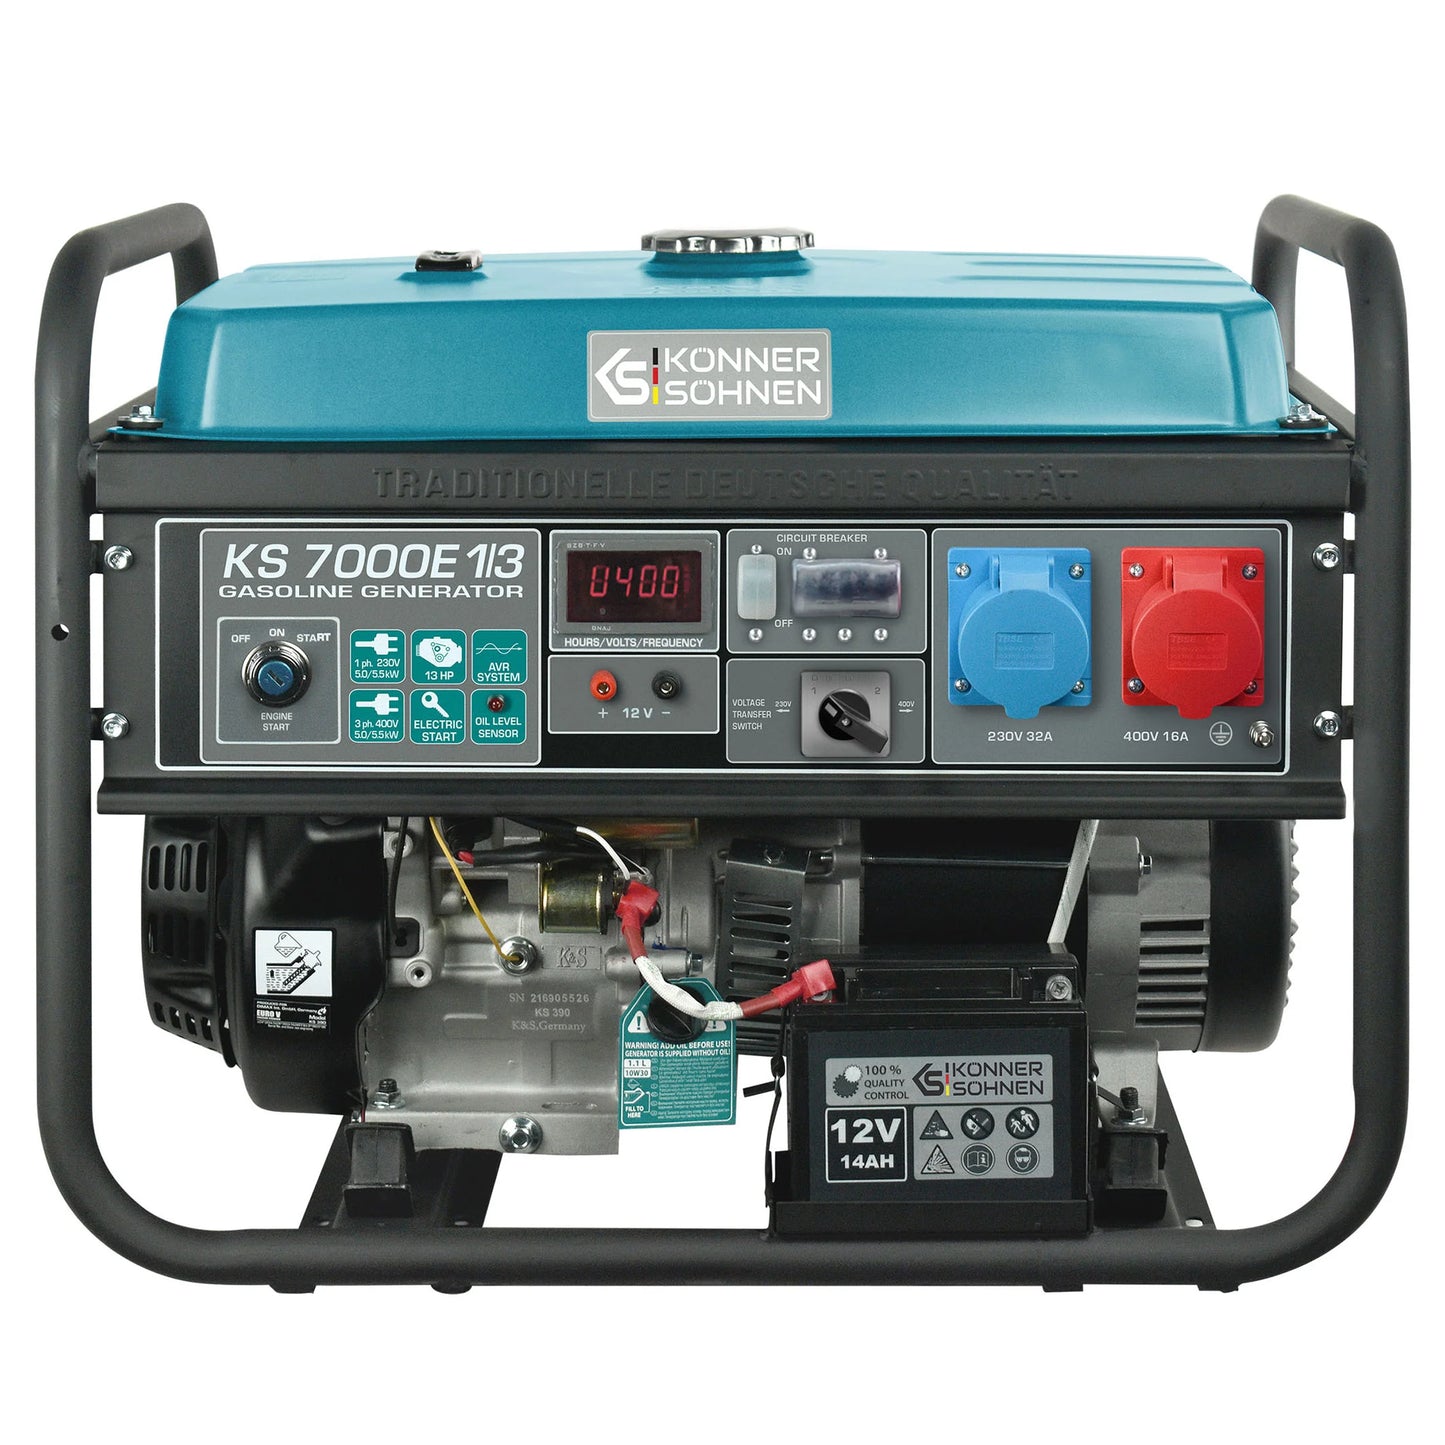 Petrol generator KS 7000 E 1/3